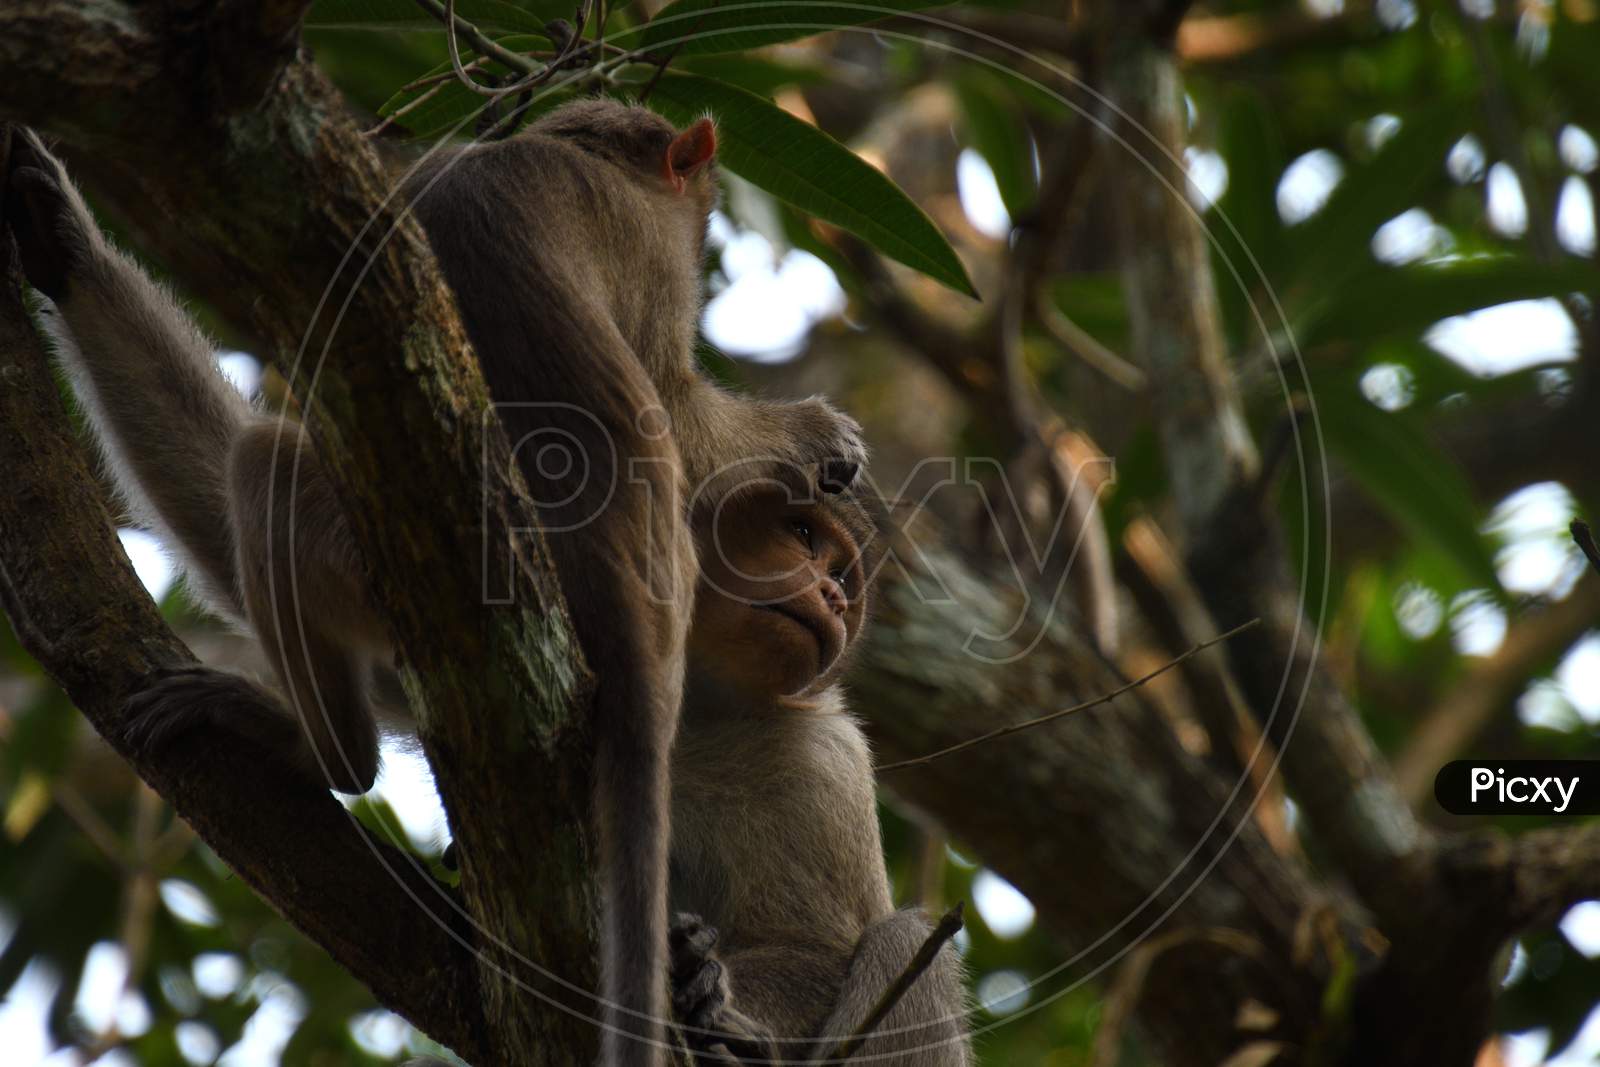 Monkeys Enjoying Their Leisure Time